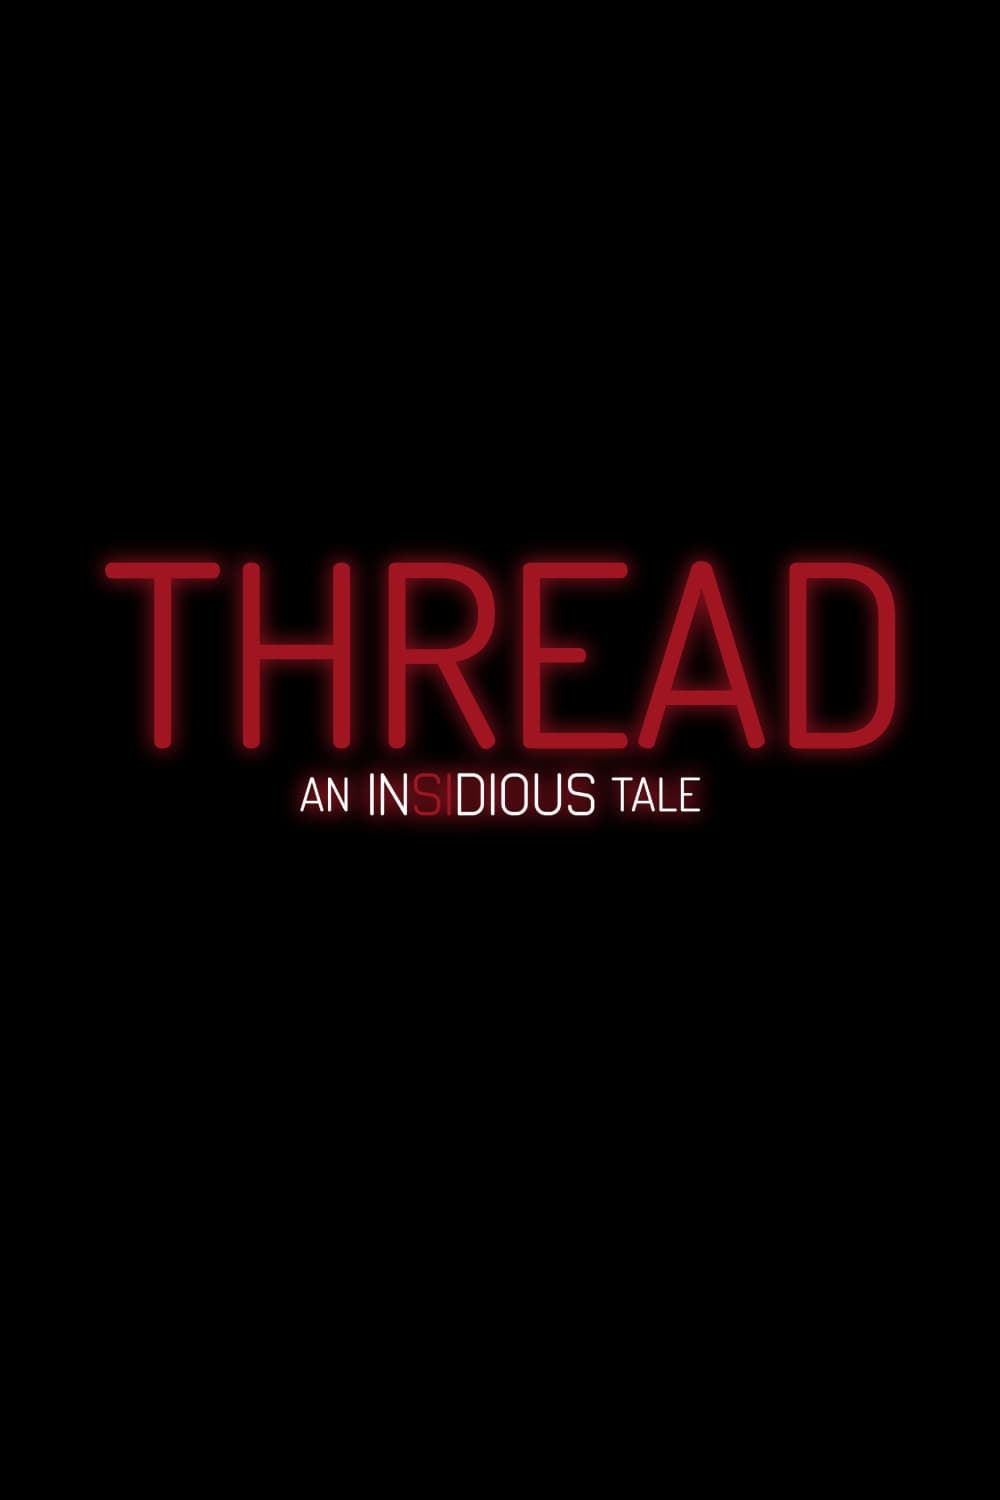 Thread - An incidious tale